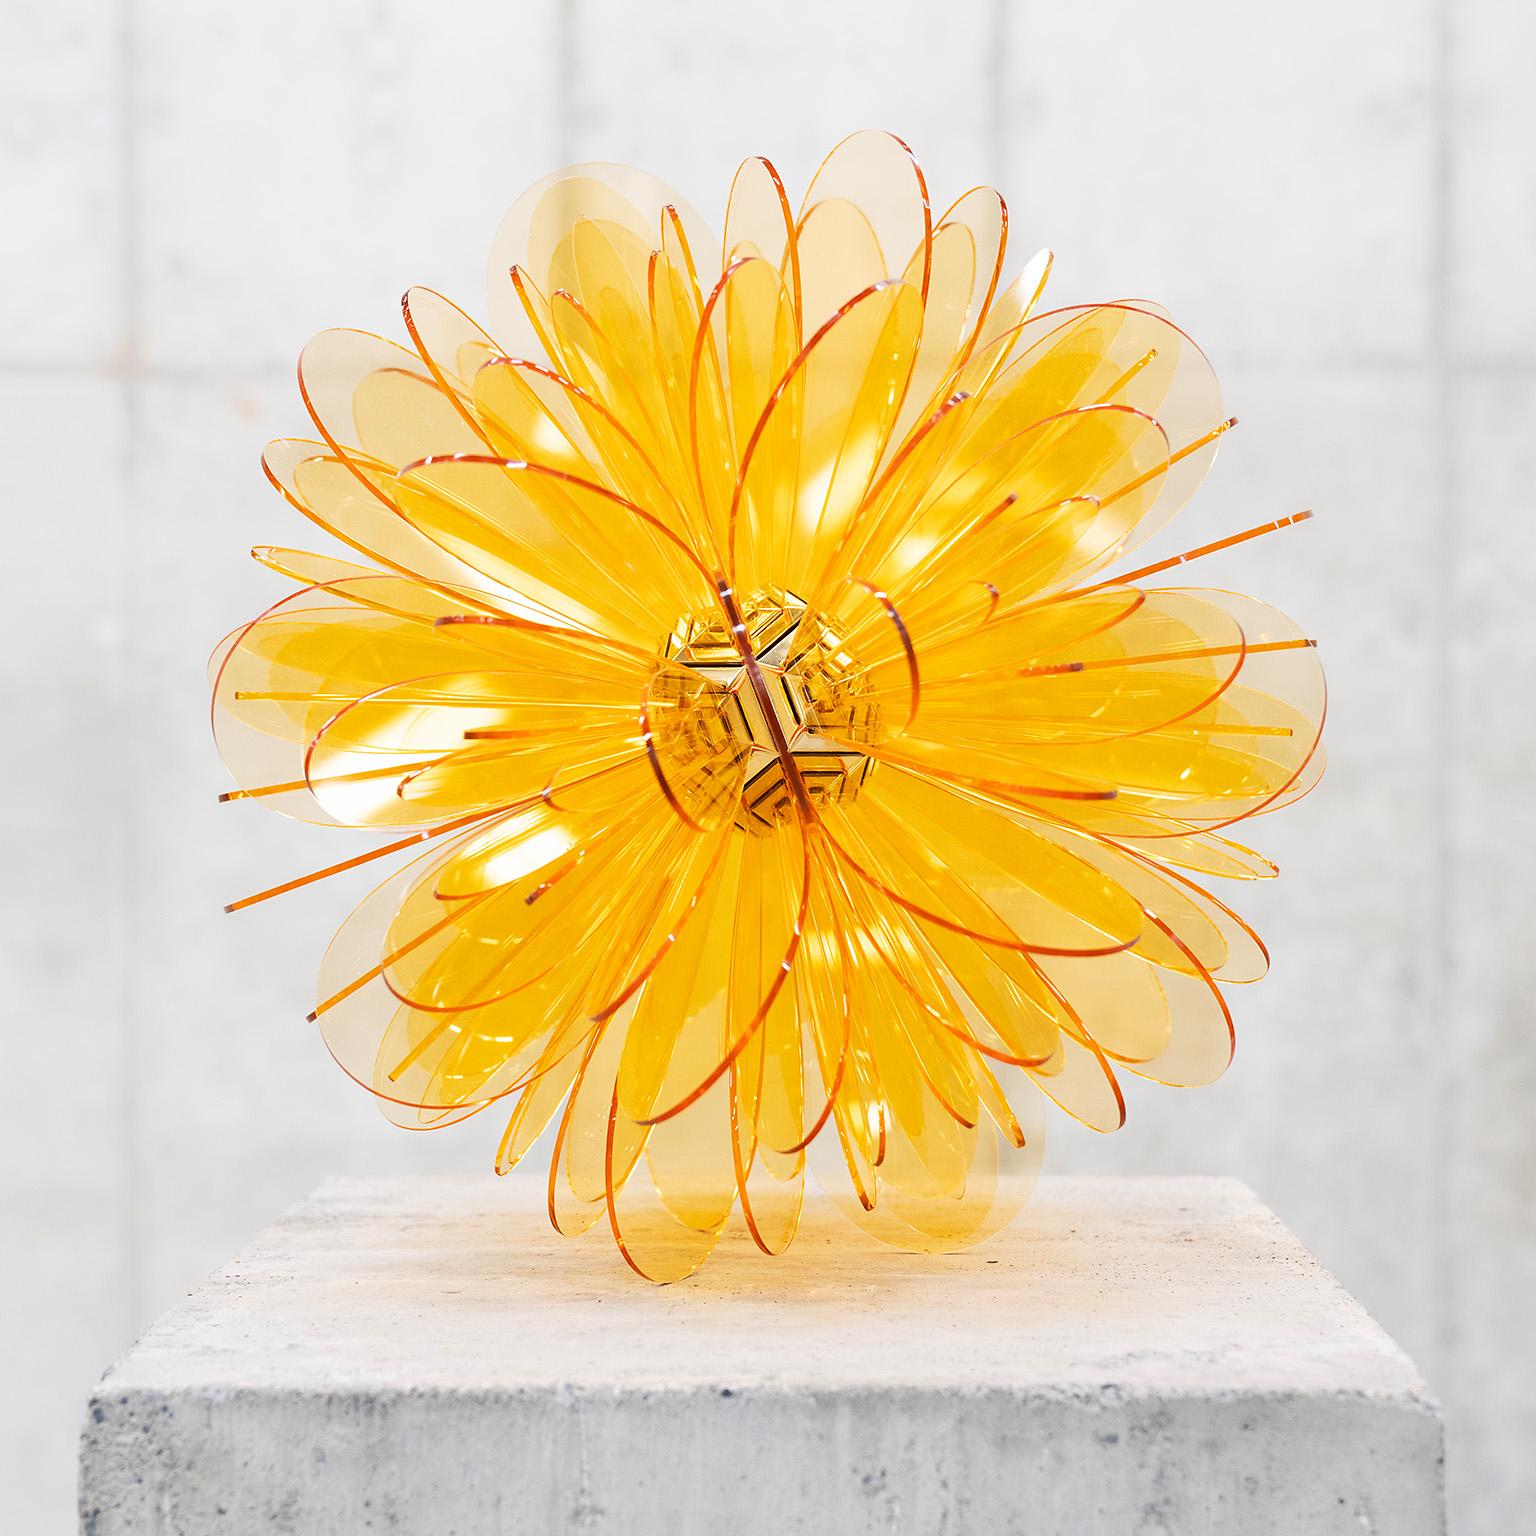 « Bloom n° 8 » de la série Bloom, sculpture abstraite, organique, acrylique jaune